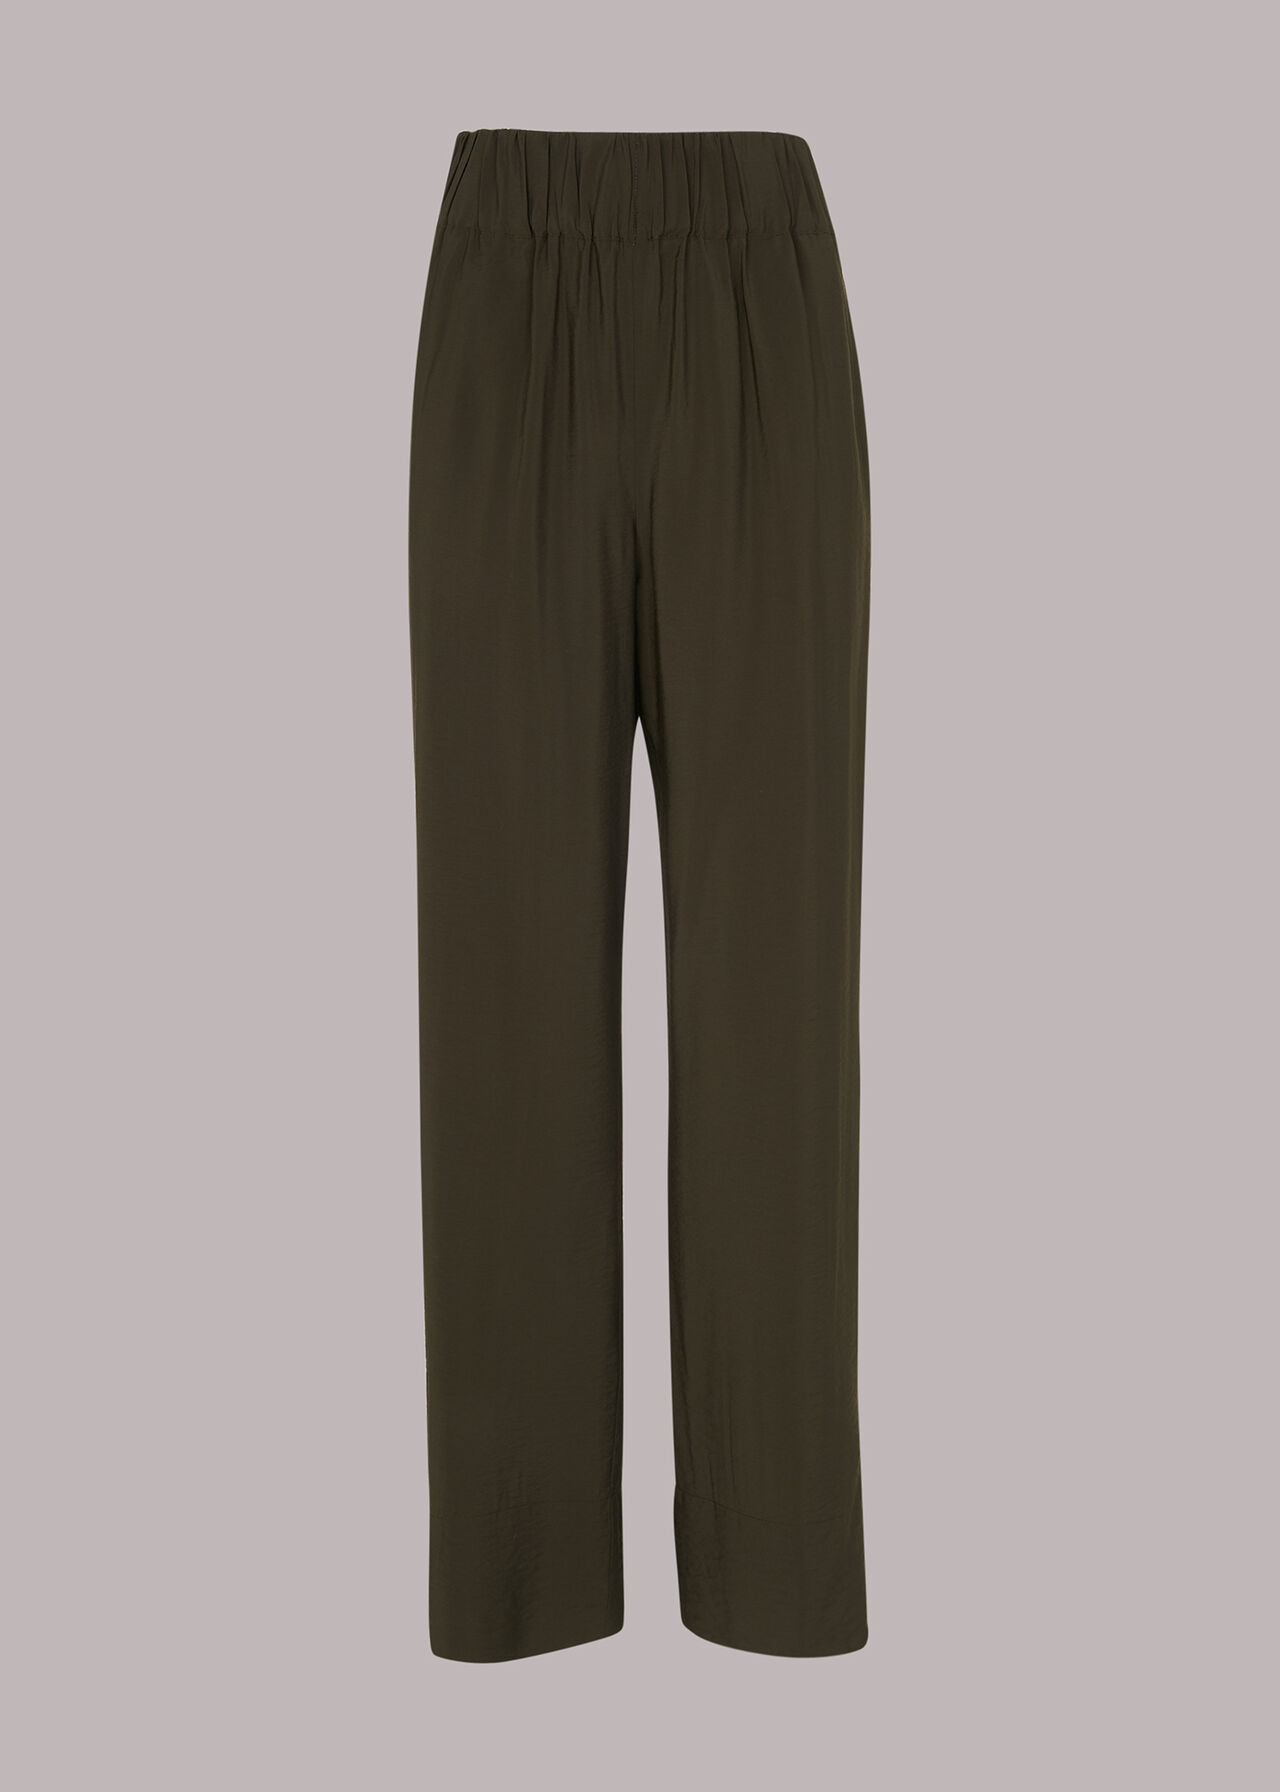 Nicola Full Length Trouser